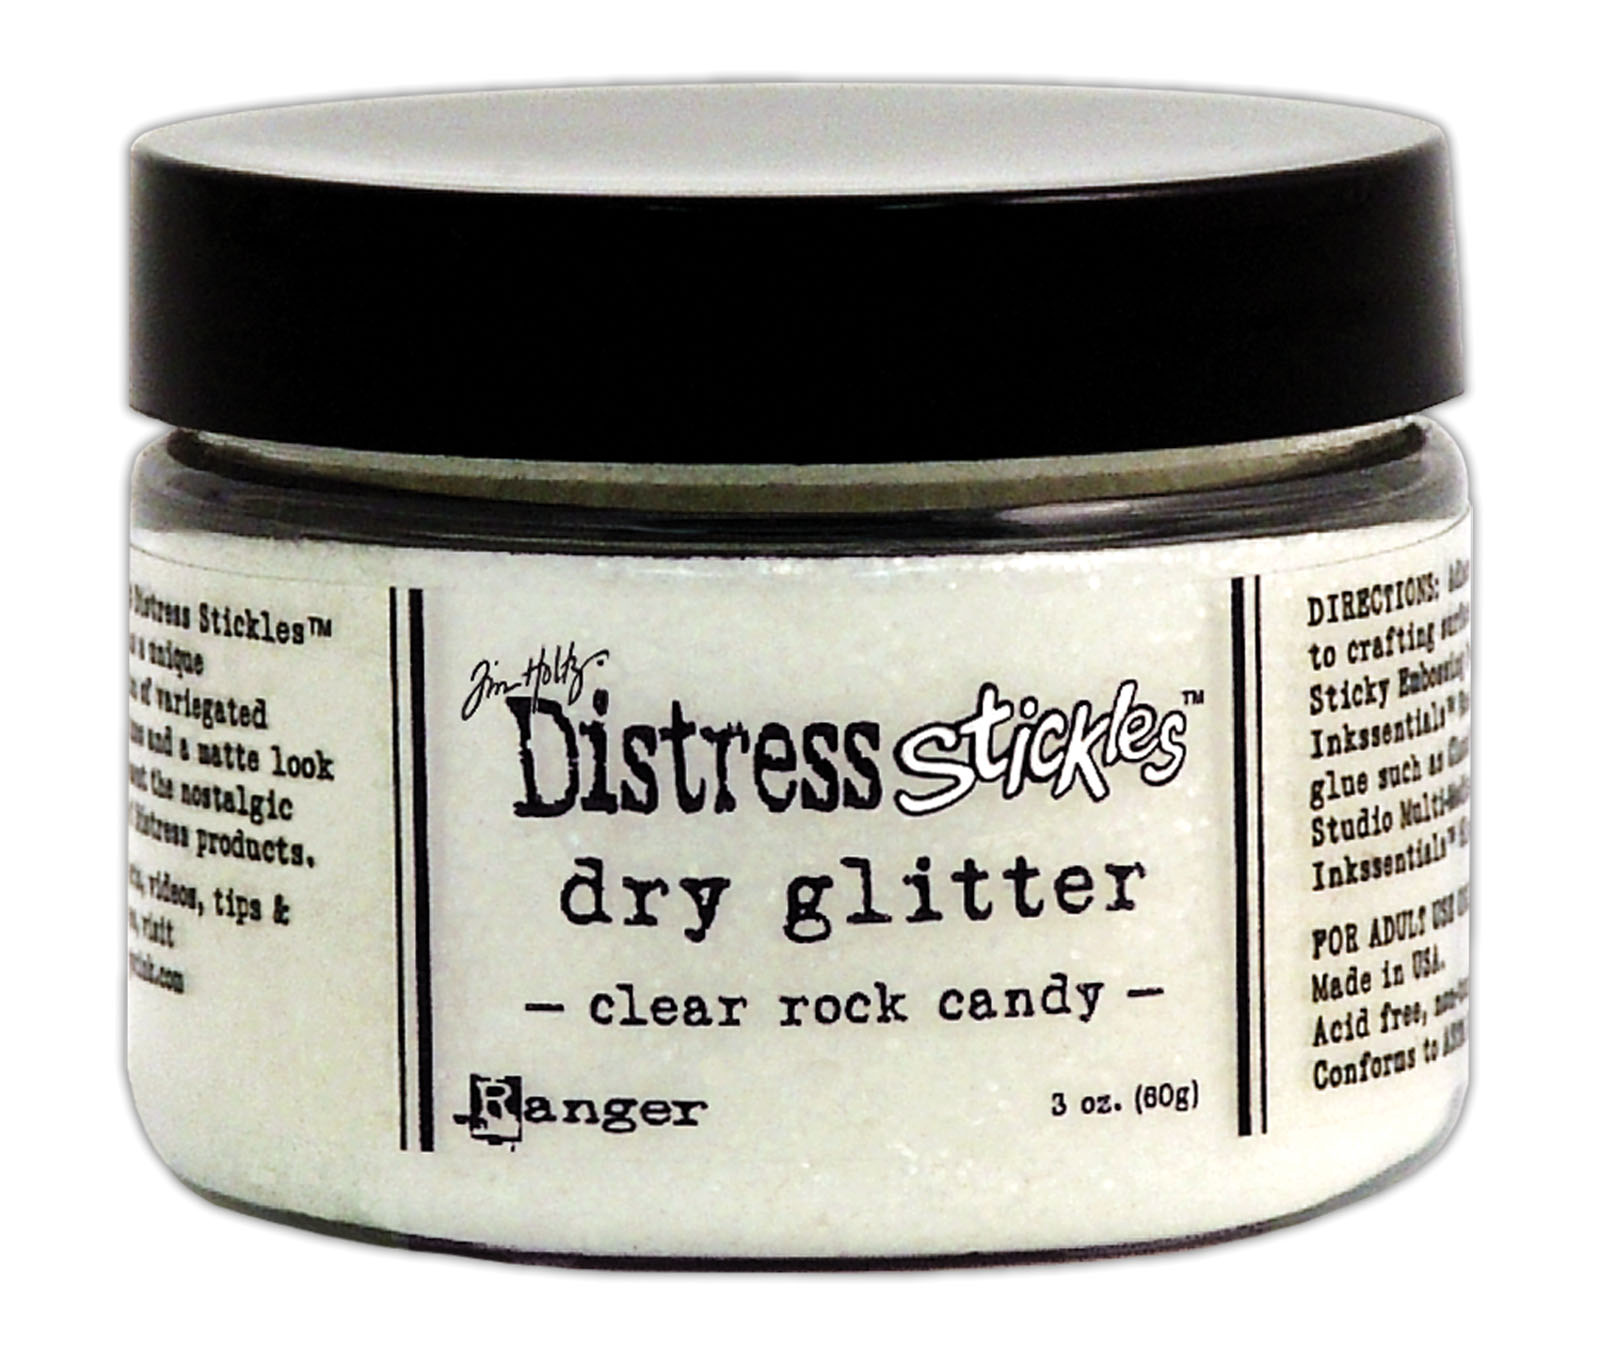 Ranger • Tim Holtz Distress stickles dry glitter Clear rock candy